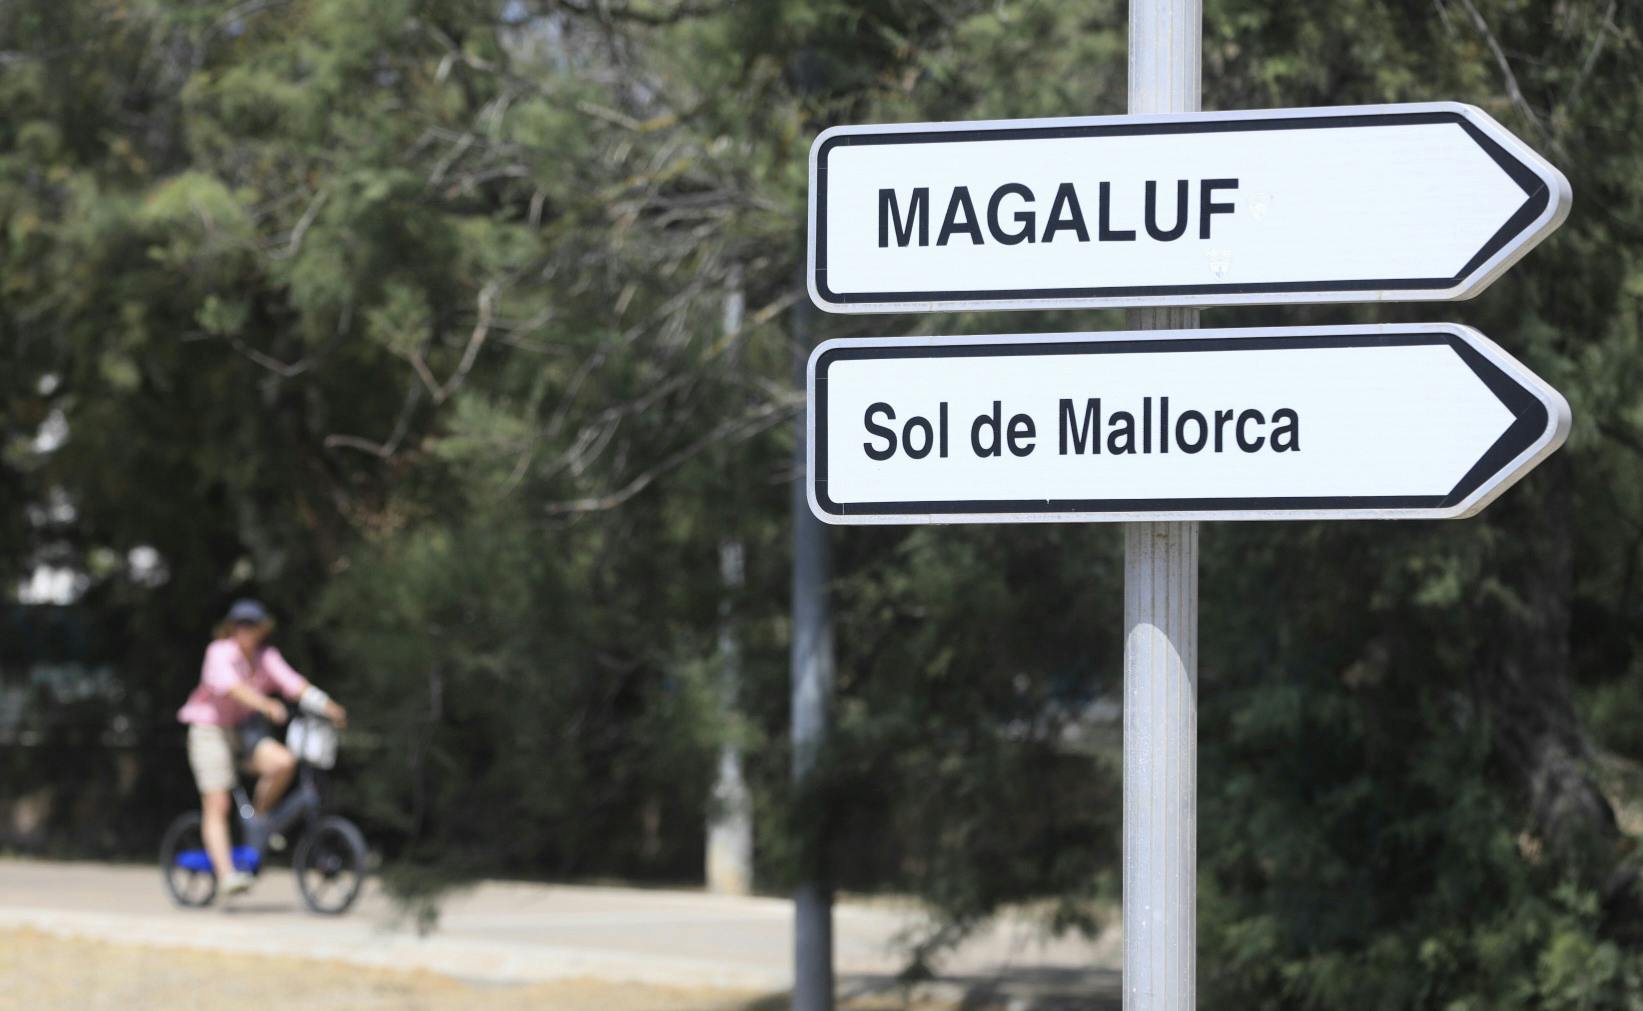 Voldtægten skete på et ferieresort på ferieøen Mallorca.